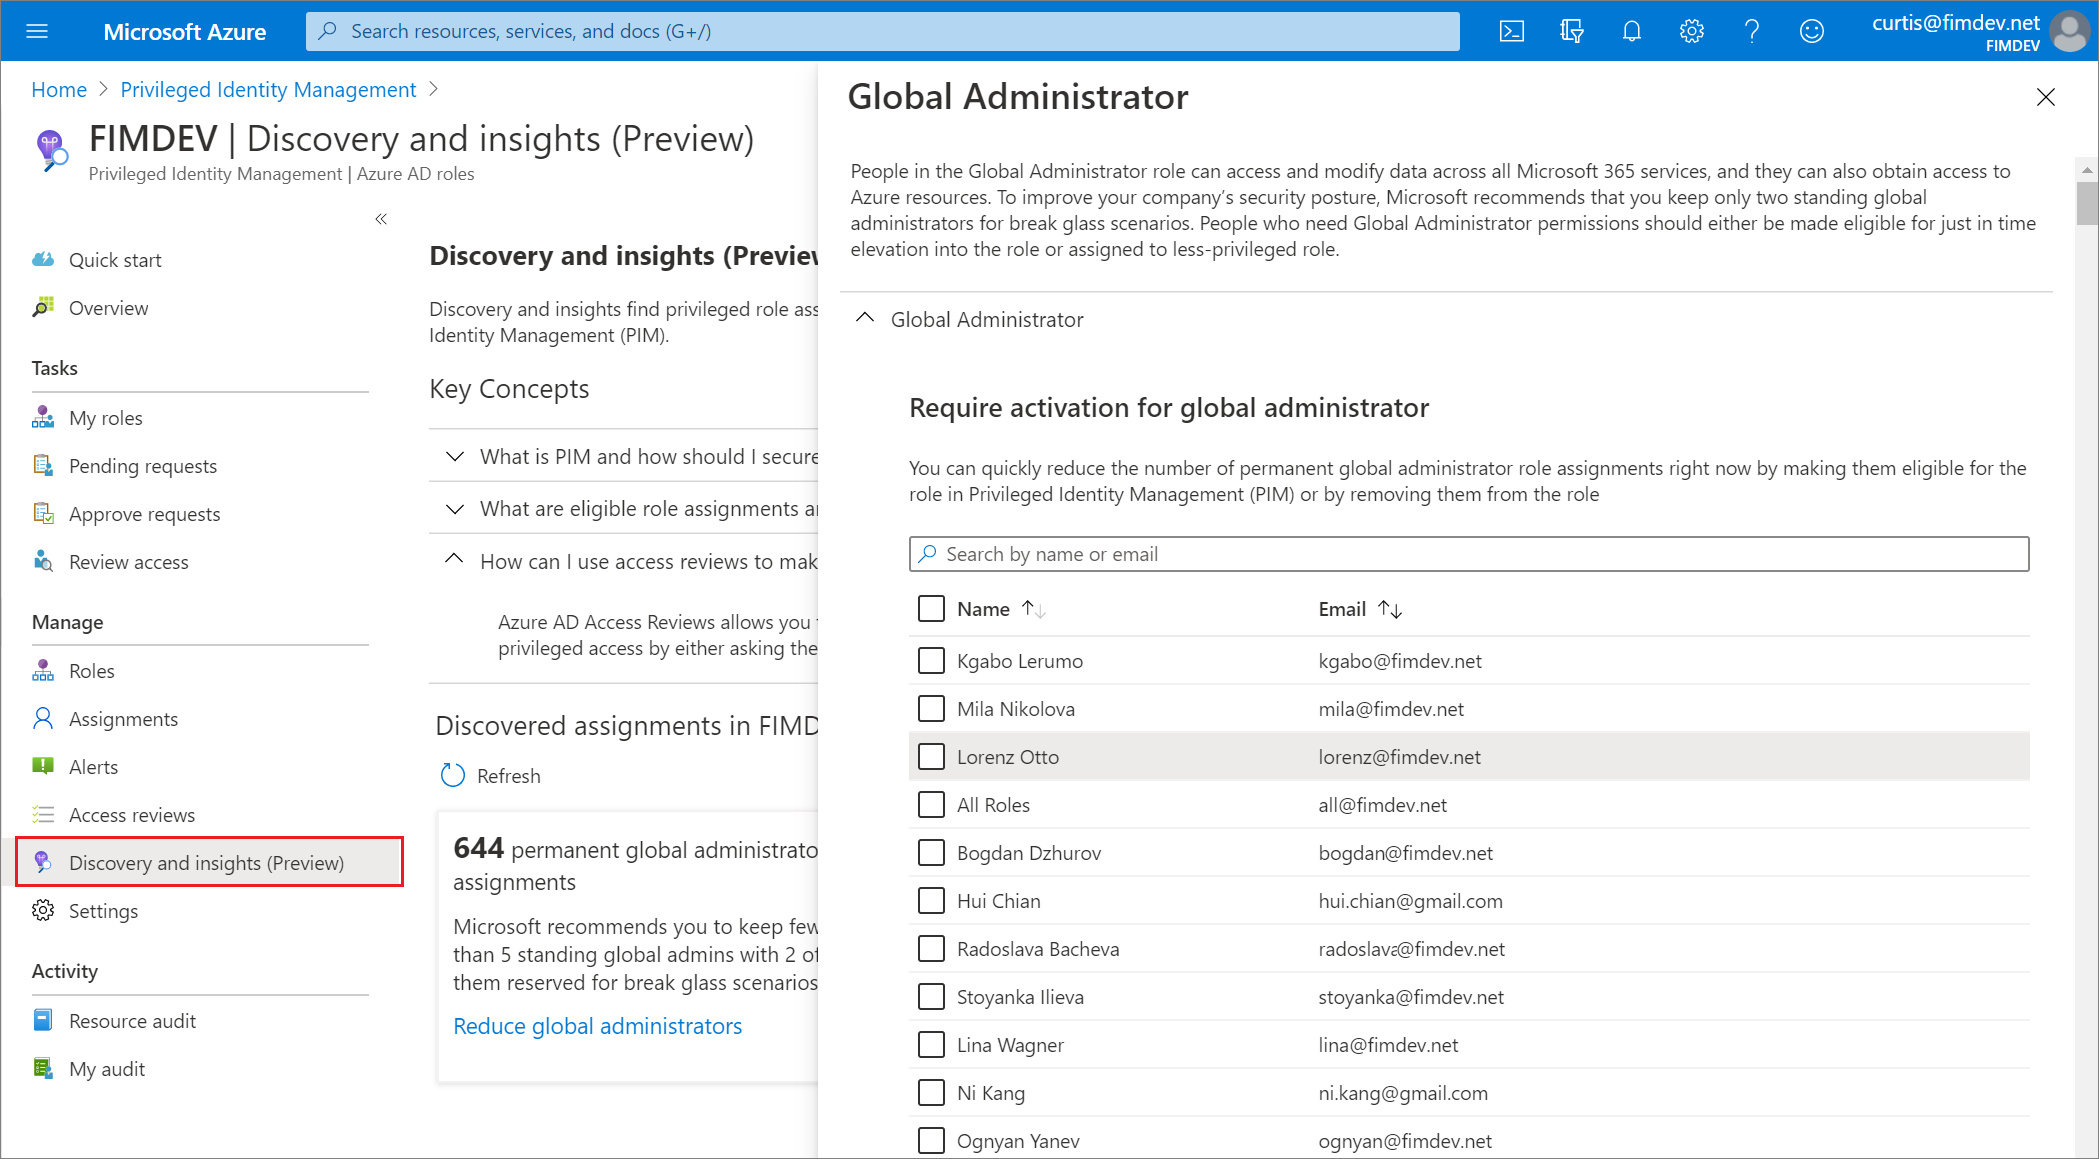 Reduce global administrators - Roles pane showing all Global Administrators